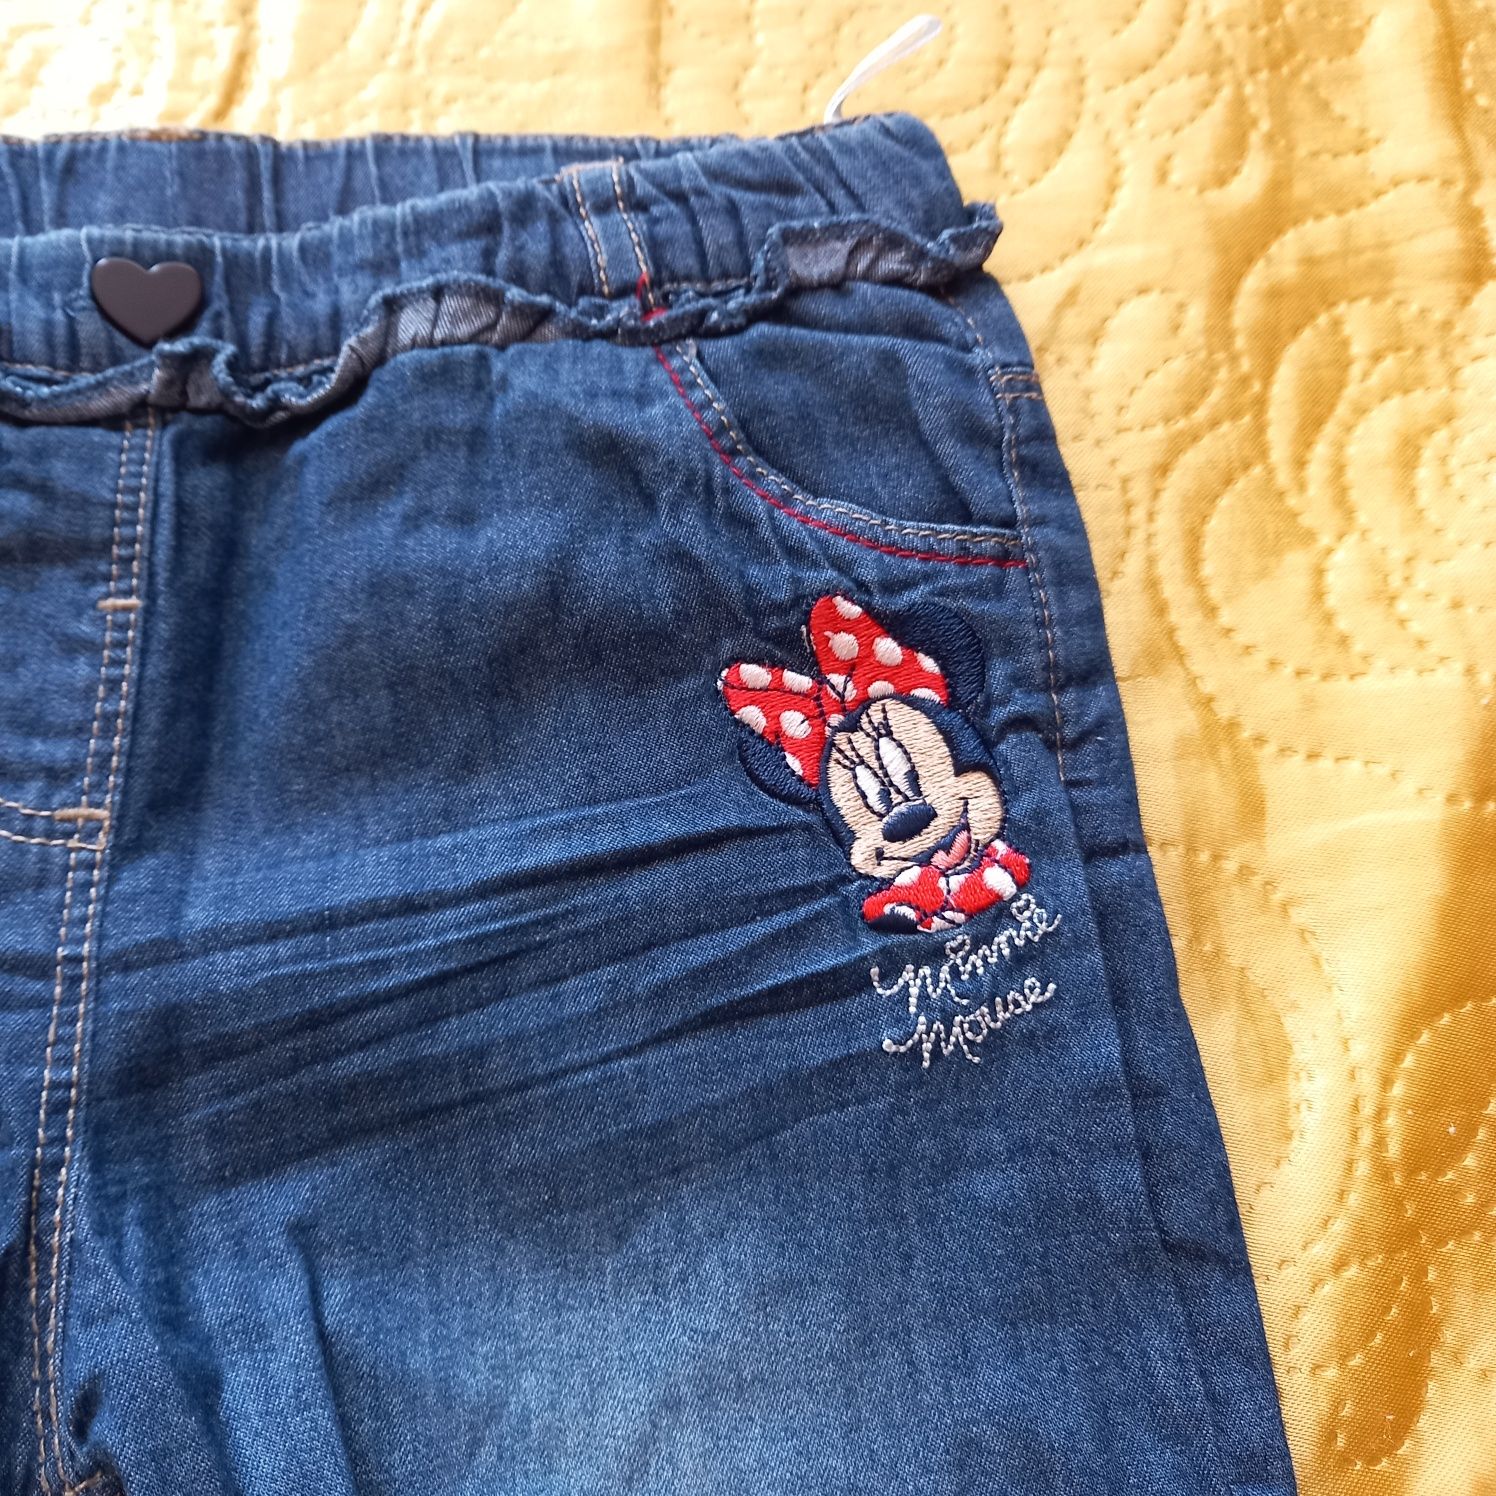 Spodnie dziewczęce z miękkiego jeansu, Minnie, C&A, r. 86 Zestaw